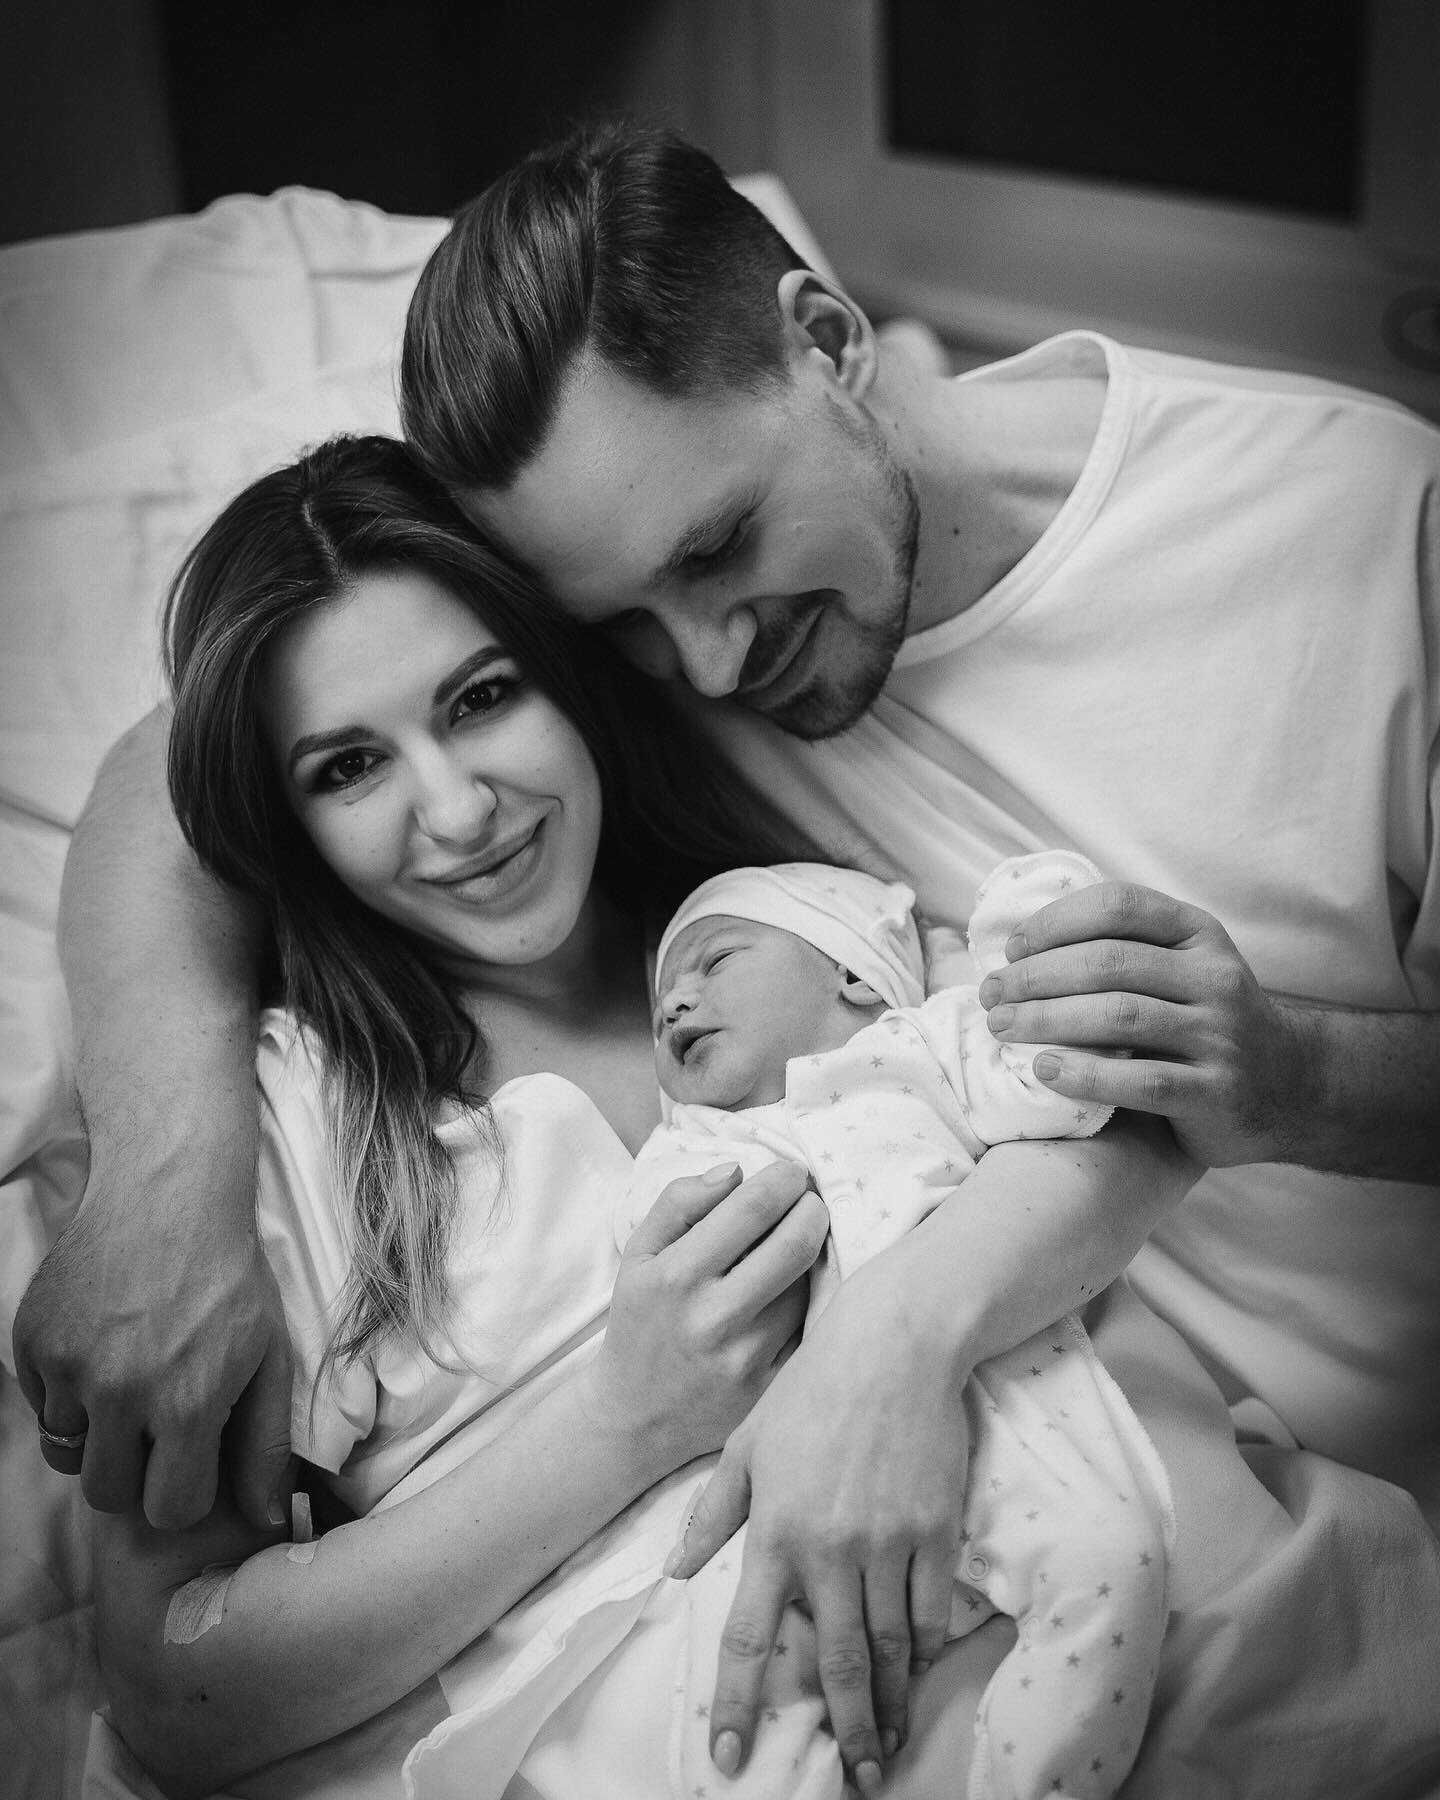 Блогеры Натали Литвин и Александр Куровский стали родителями. Фото